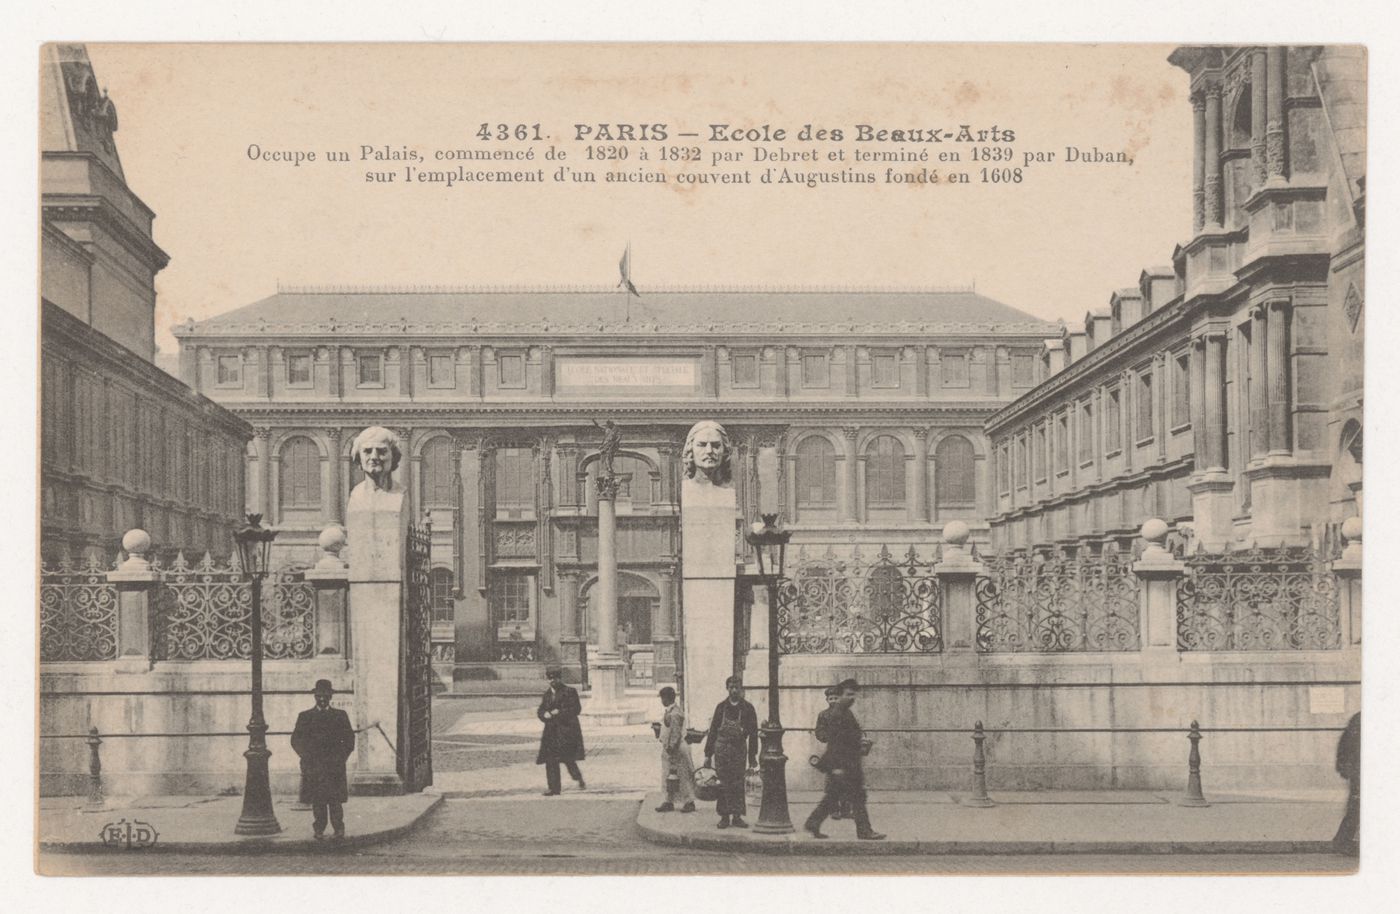 Carte postale avec vue de l'École des Beaux-Arts, Paris